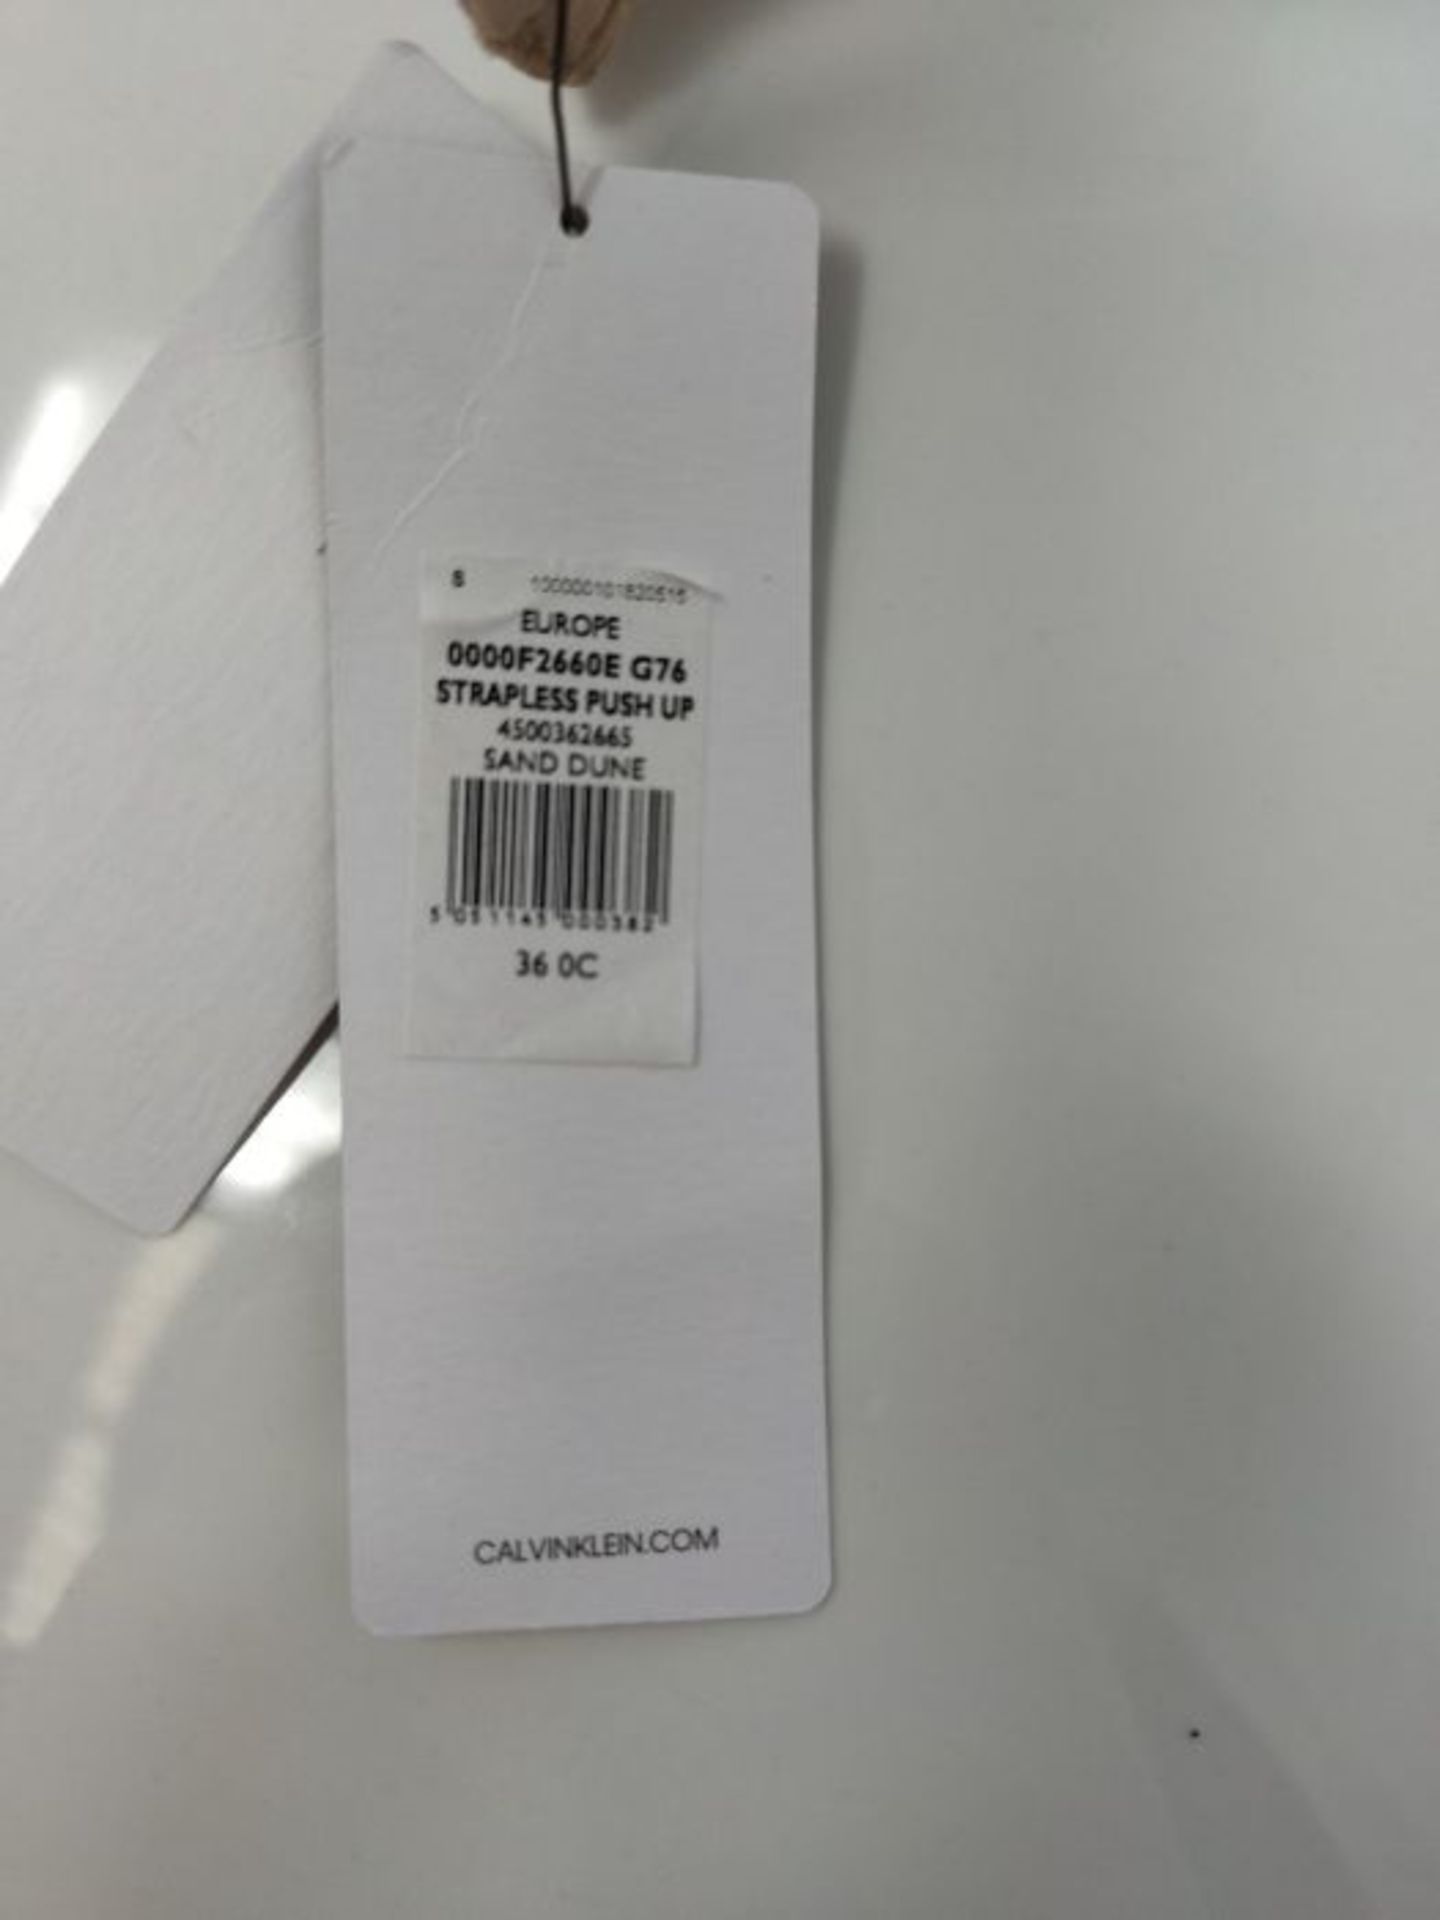 Calvin Klein - Strapless Bra - Women's Underwear - Beige - Perfectly Fit - 78% Polyami - Image 3 of 3